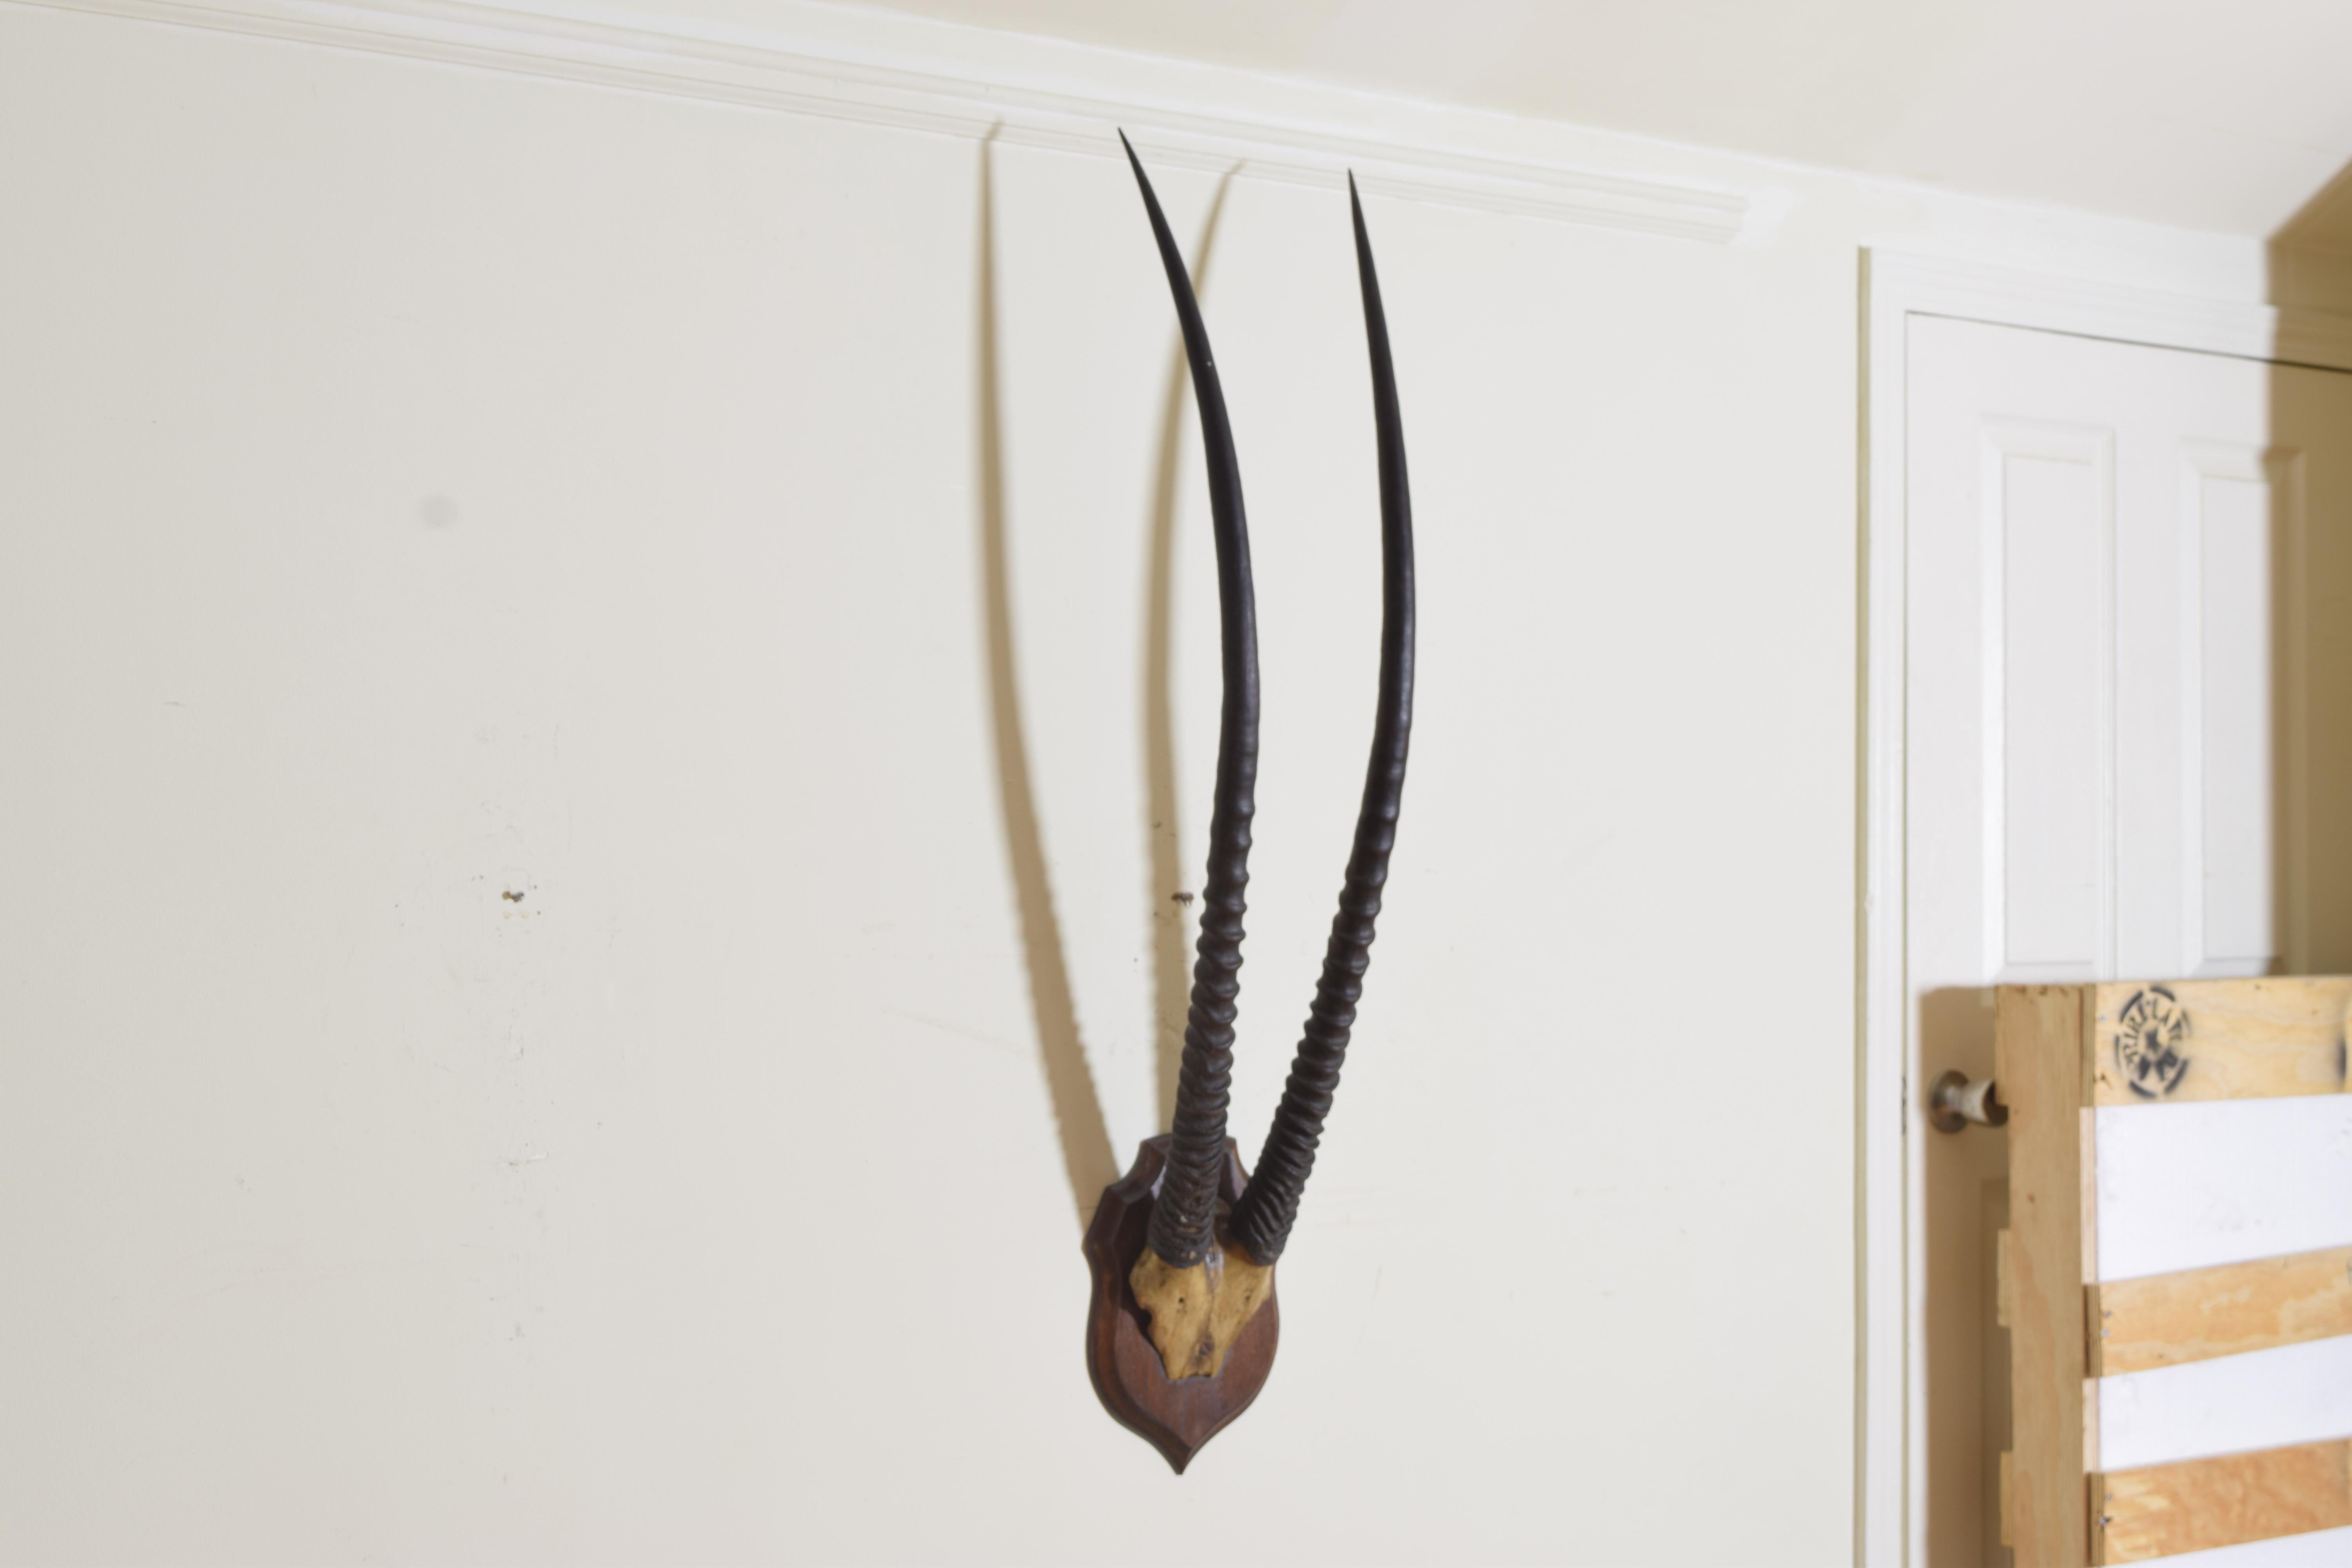 Corne de gemsbok et crâne partiel montés sur une plaque en chêne façonnée.